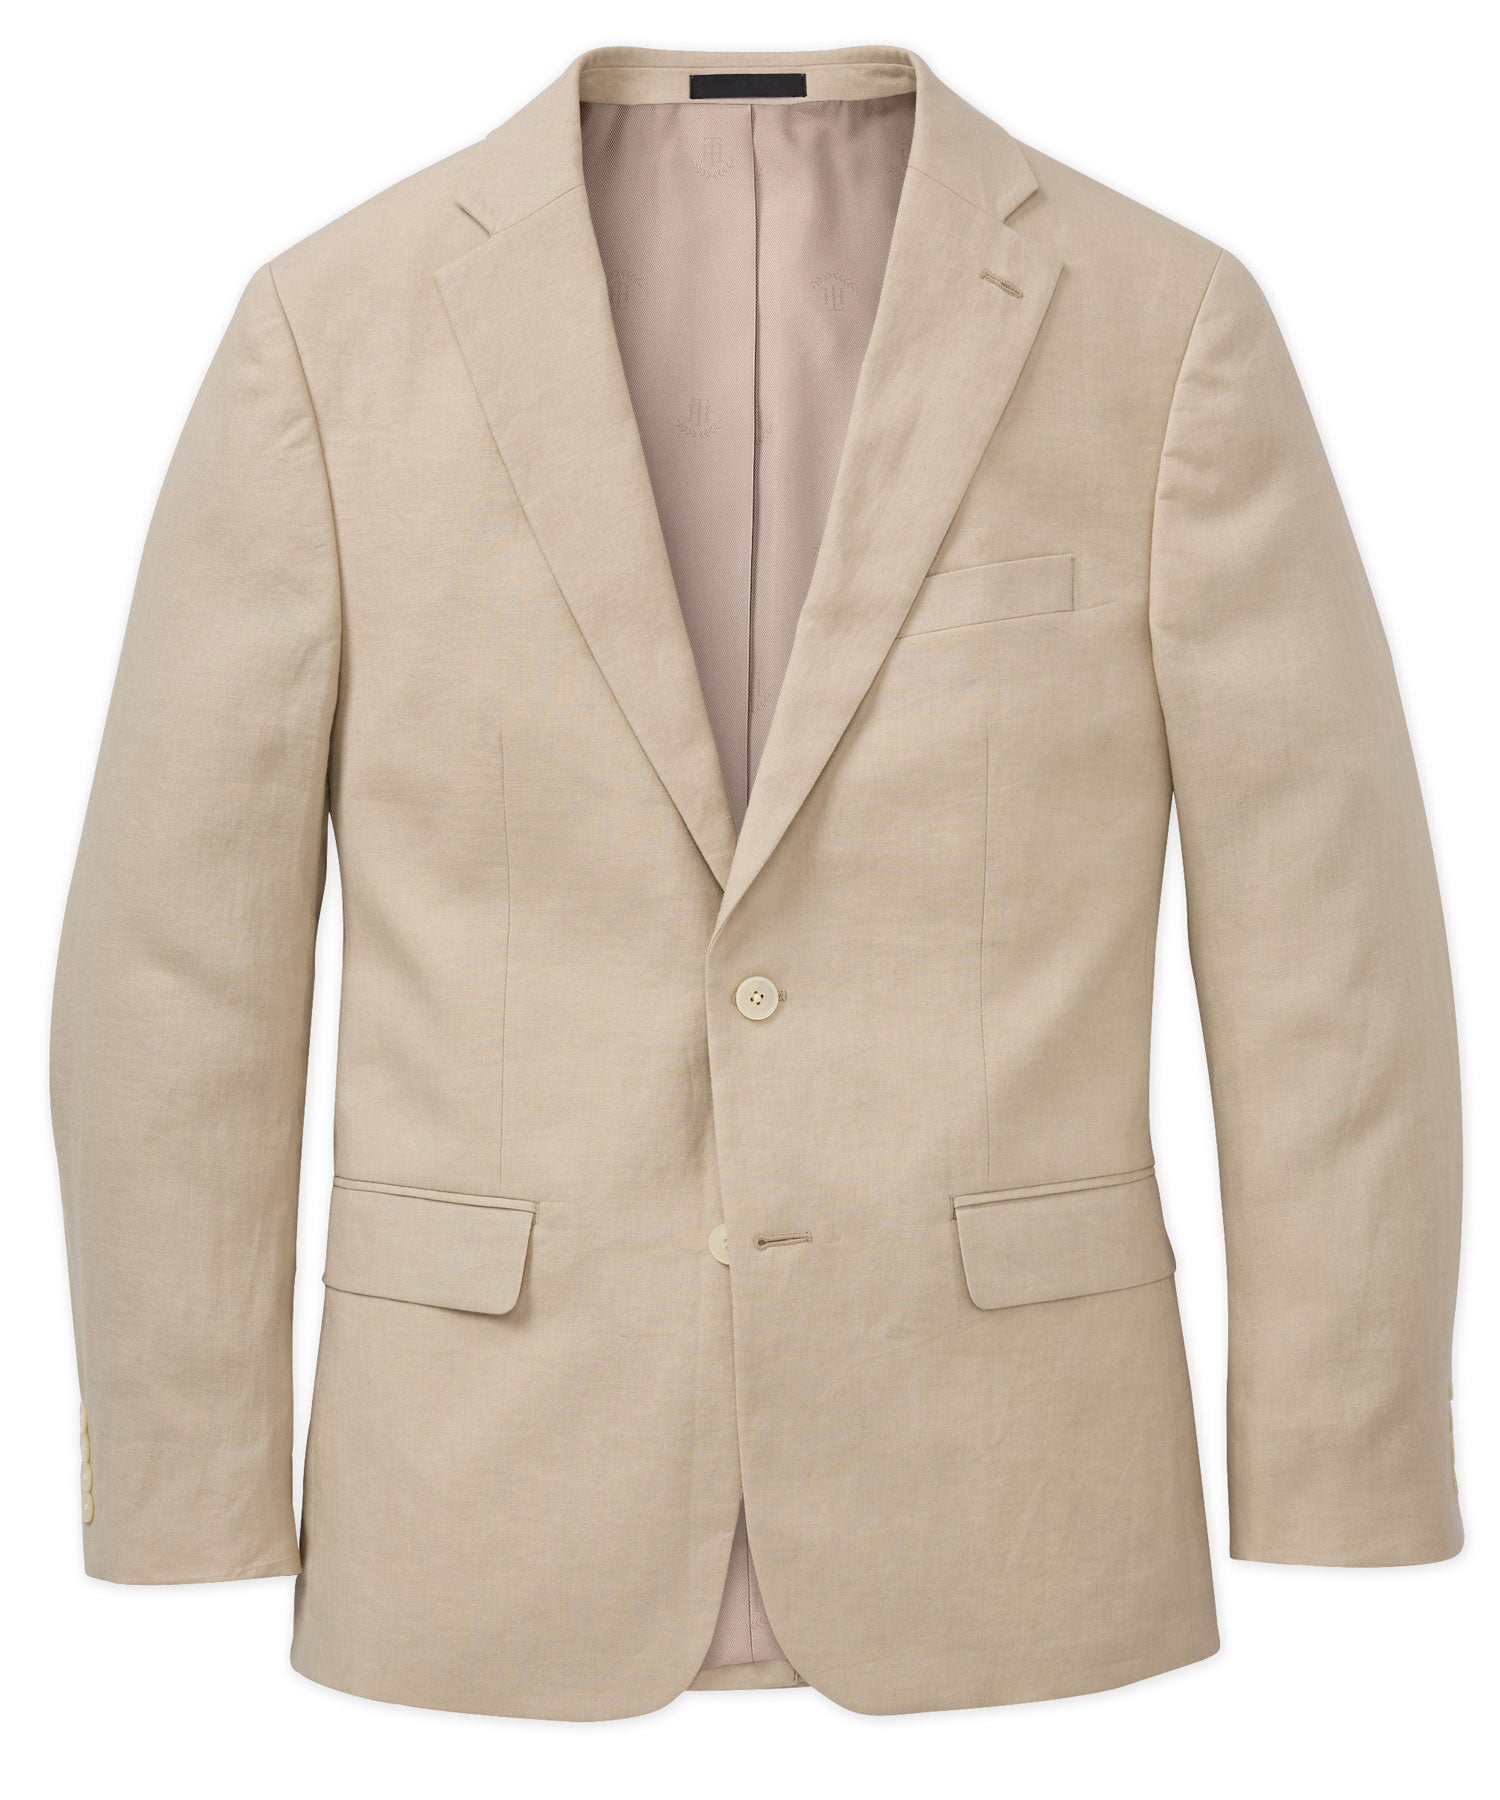 Tommy Hilfiger Solid Linen Sport Coat, Men's Big & Tall